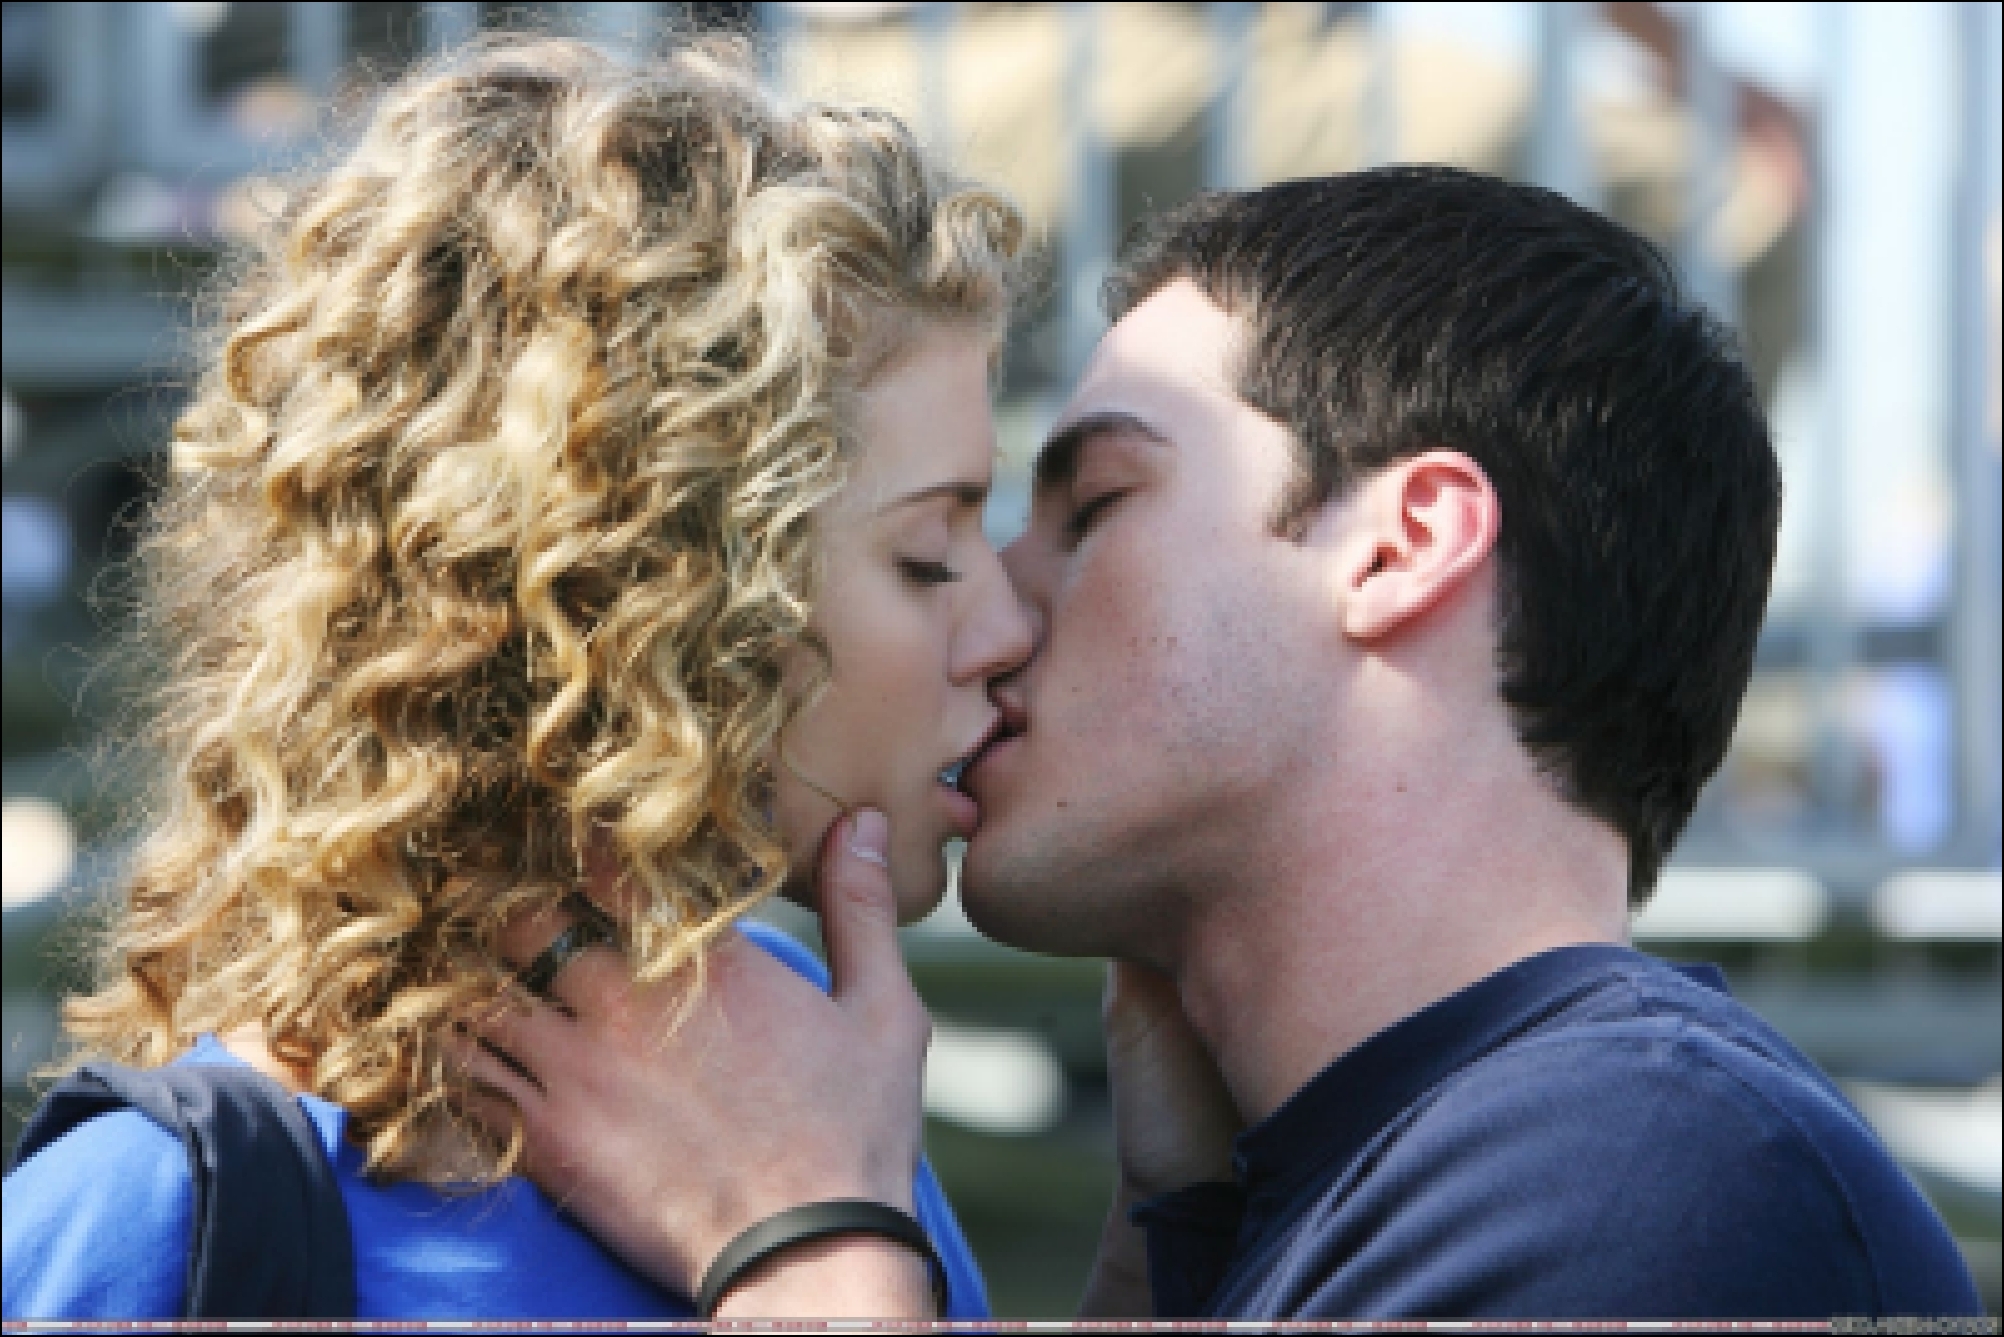 Целованная как понять. Французский поцелуй. Кудрявая блондинка с парнем. Первый поцелуй взасос. Поцелуй с кудрявым парнем.